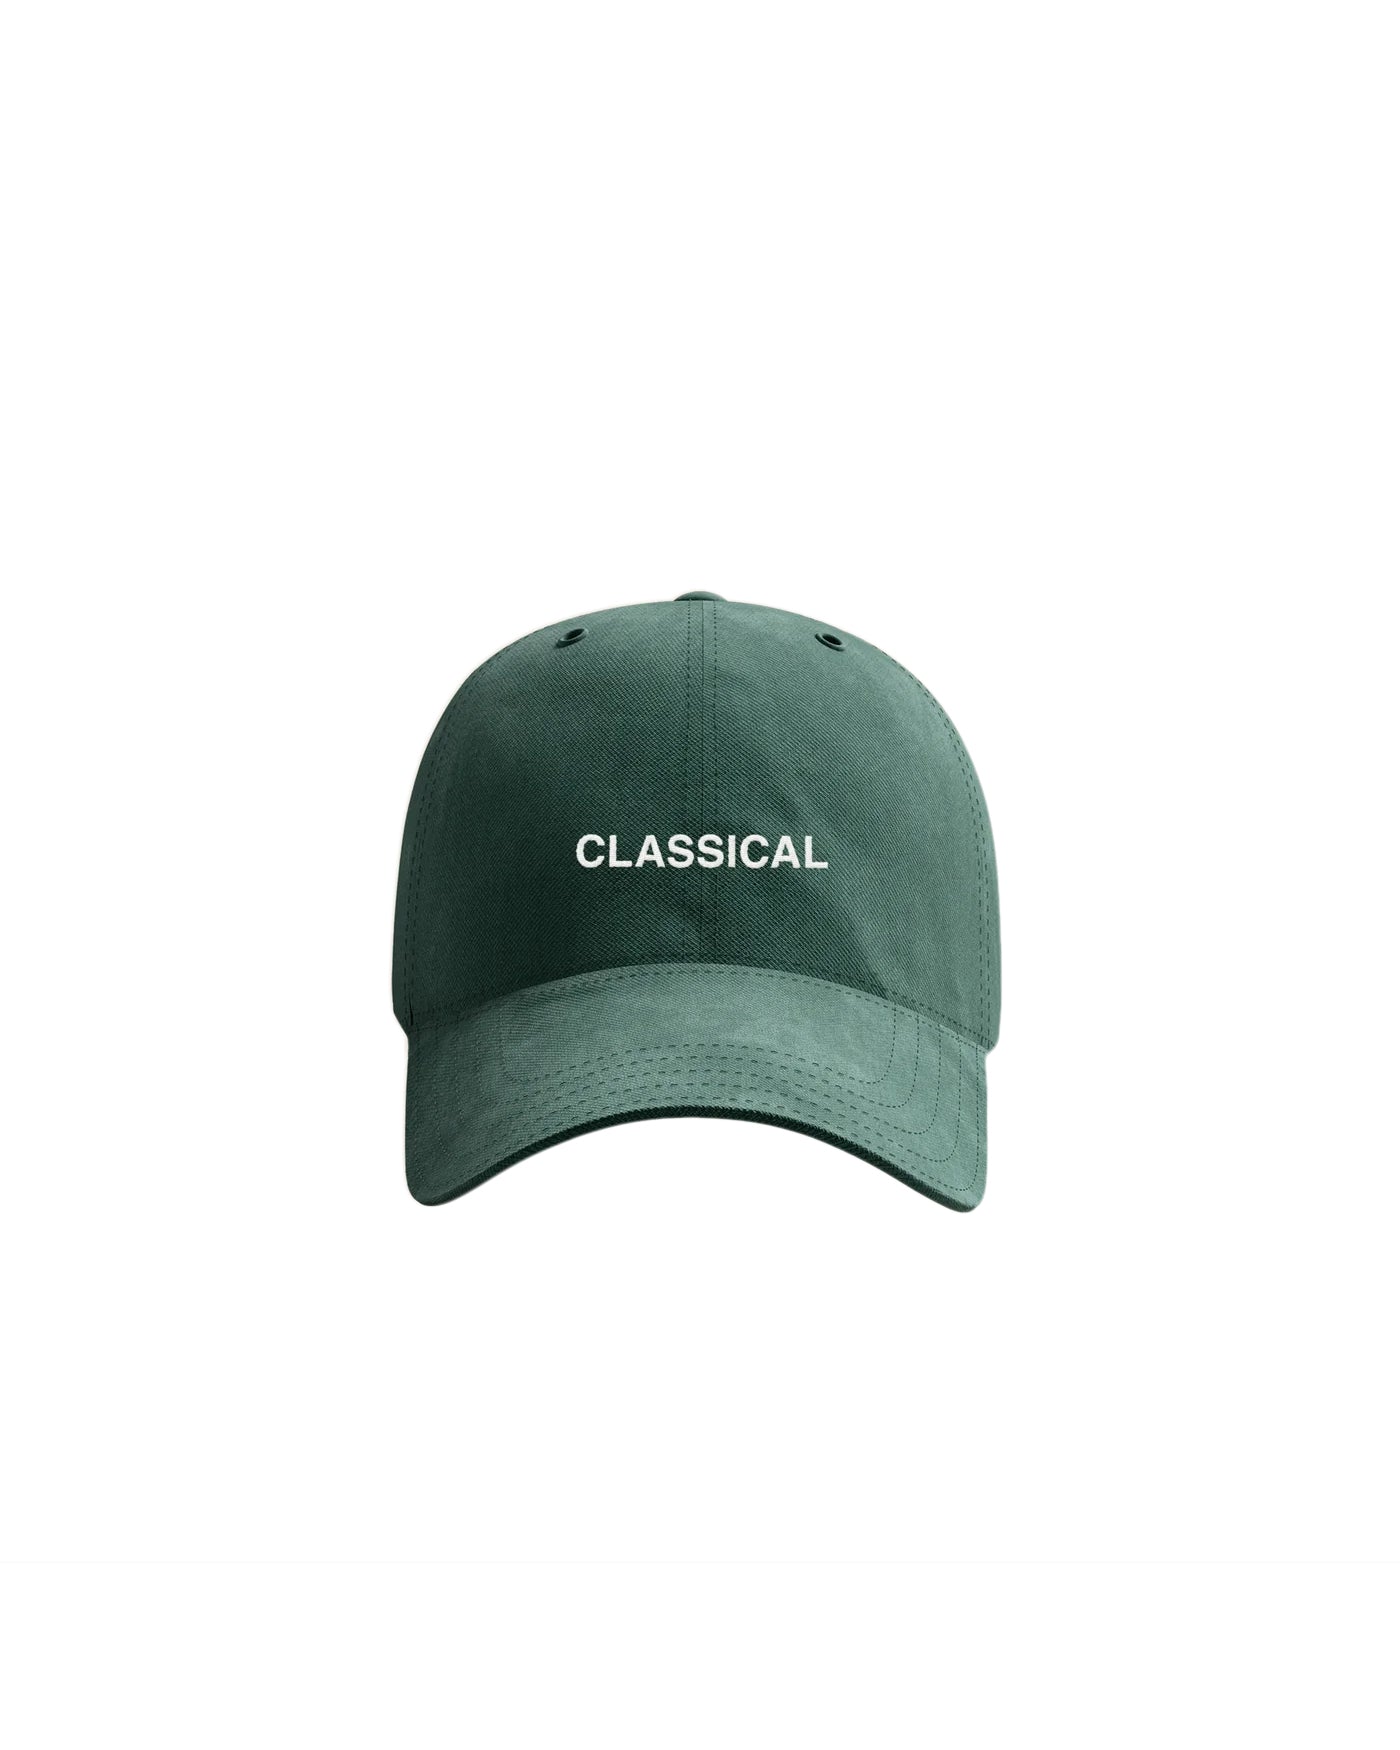 Classical Dad Hat